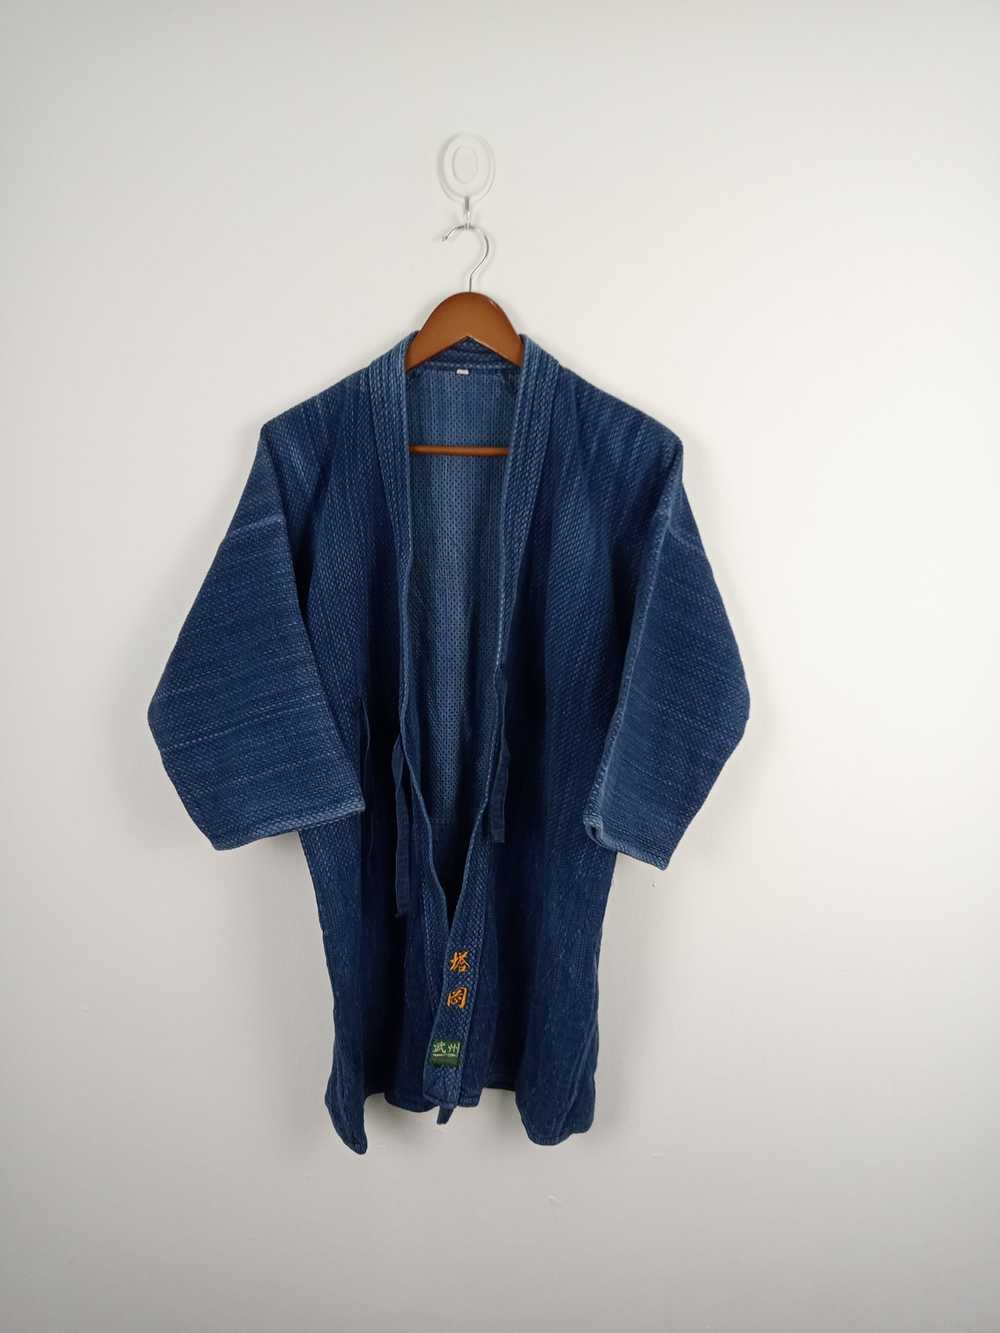 Japanese Brand × Kimono Japan Dragon Vintage Kimo… - image 1